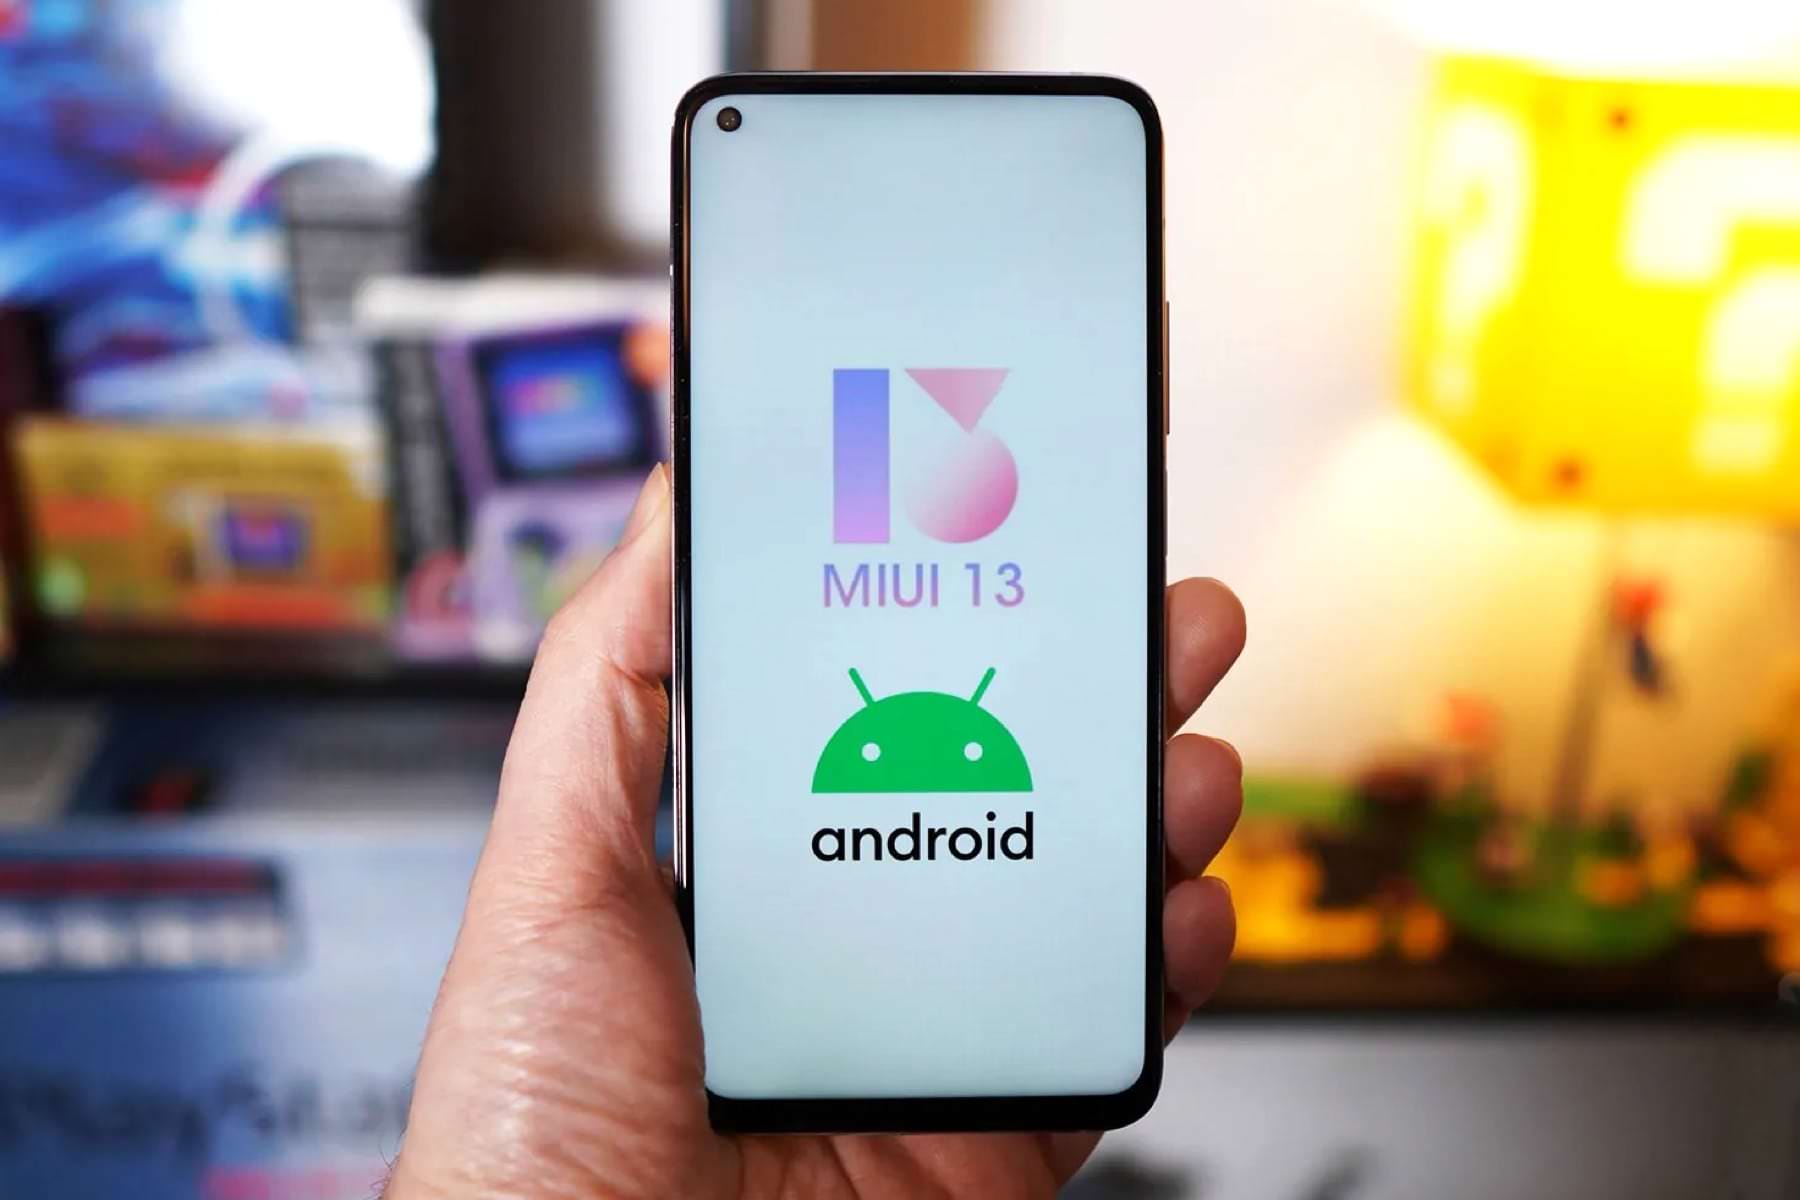 102 Xiaomi-Smartphones erhalten Betriebssystem Android 12 mit MIUI 13 – aktualisierte Liste veröffentlicht